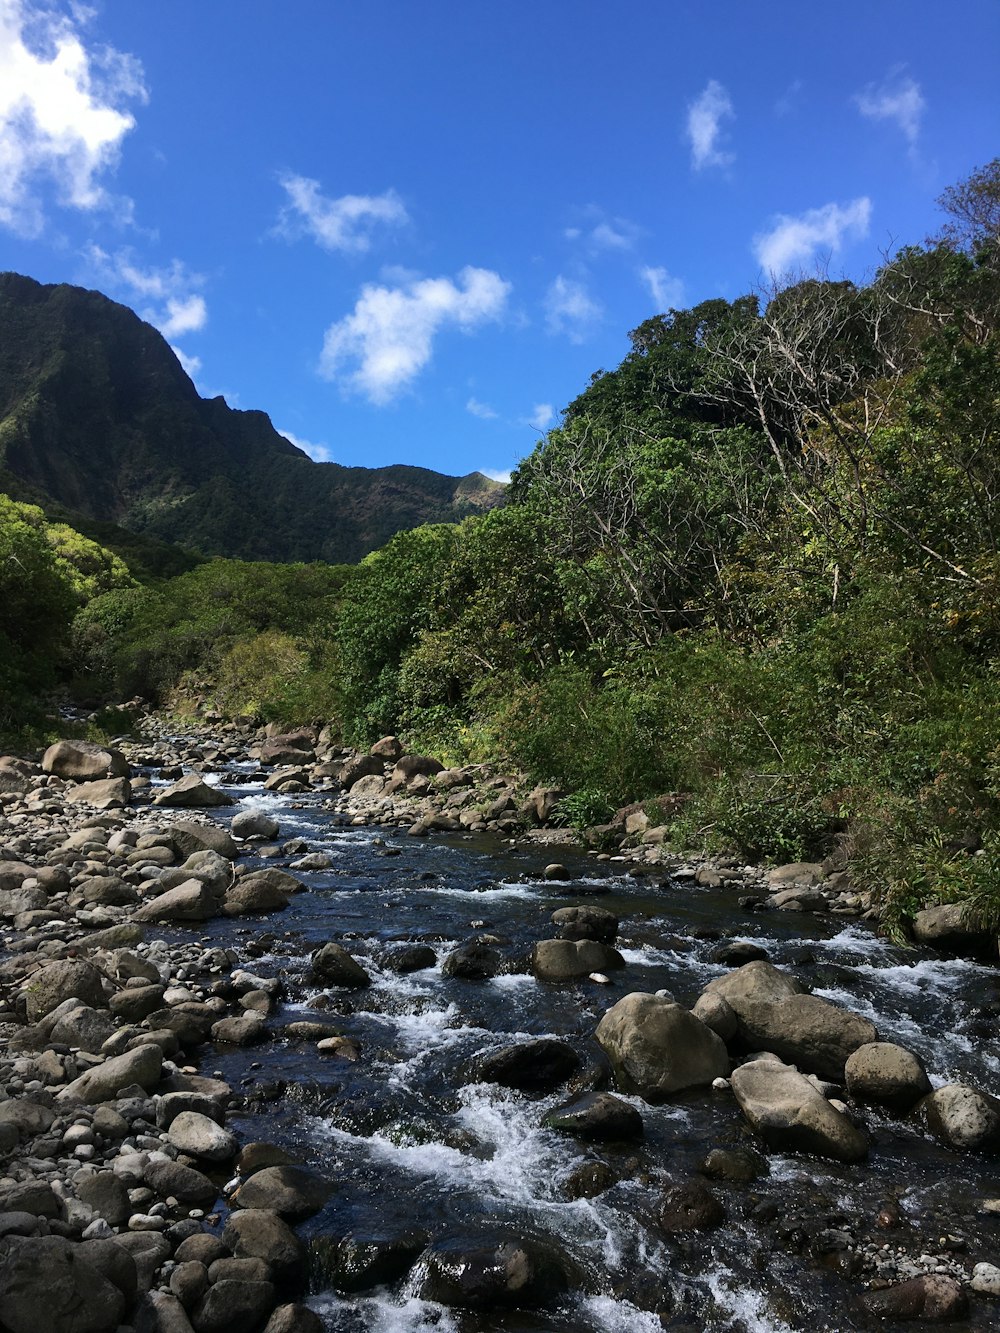 rivière rocheuse entre arbres verts et montagne sous ciel bleu pendant la journée